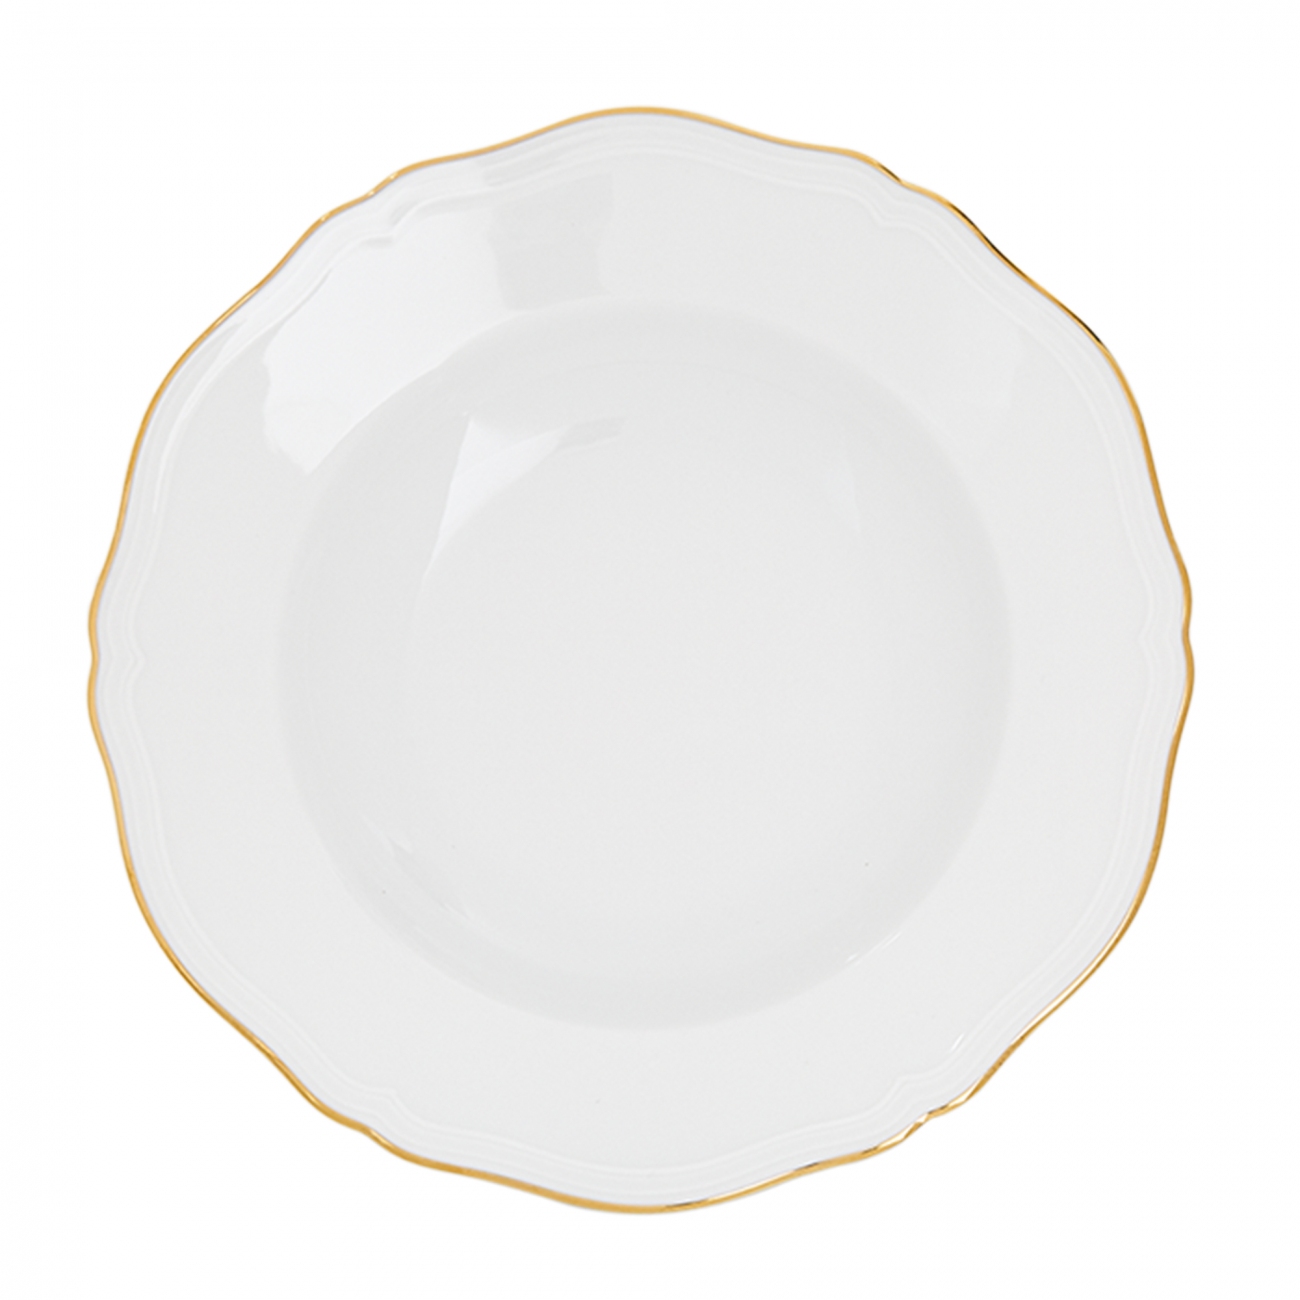 Ginori 1735 Corona Soup plate Set of 6